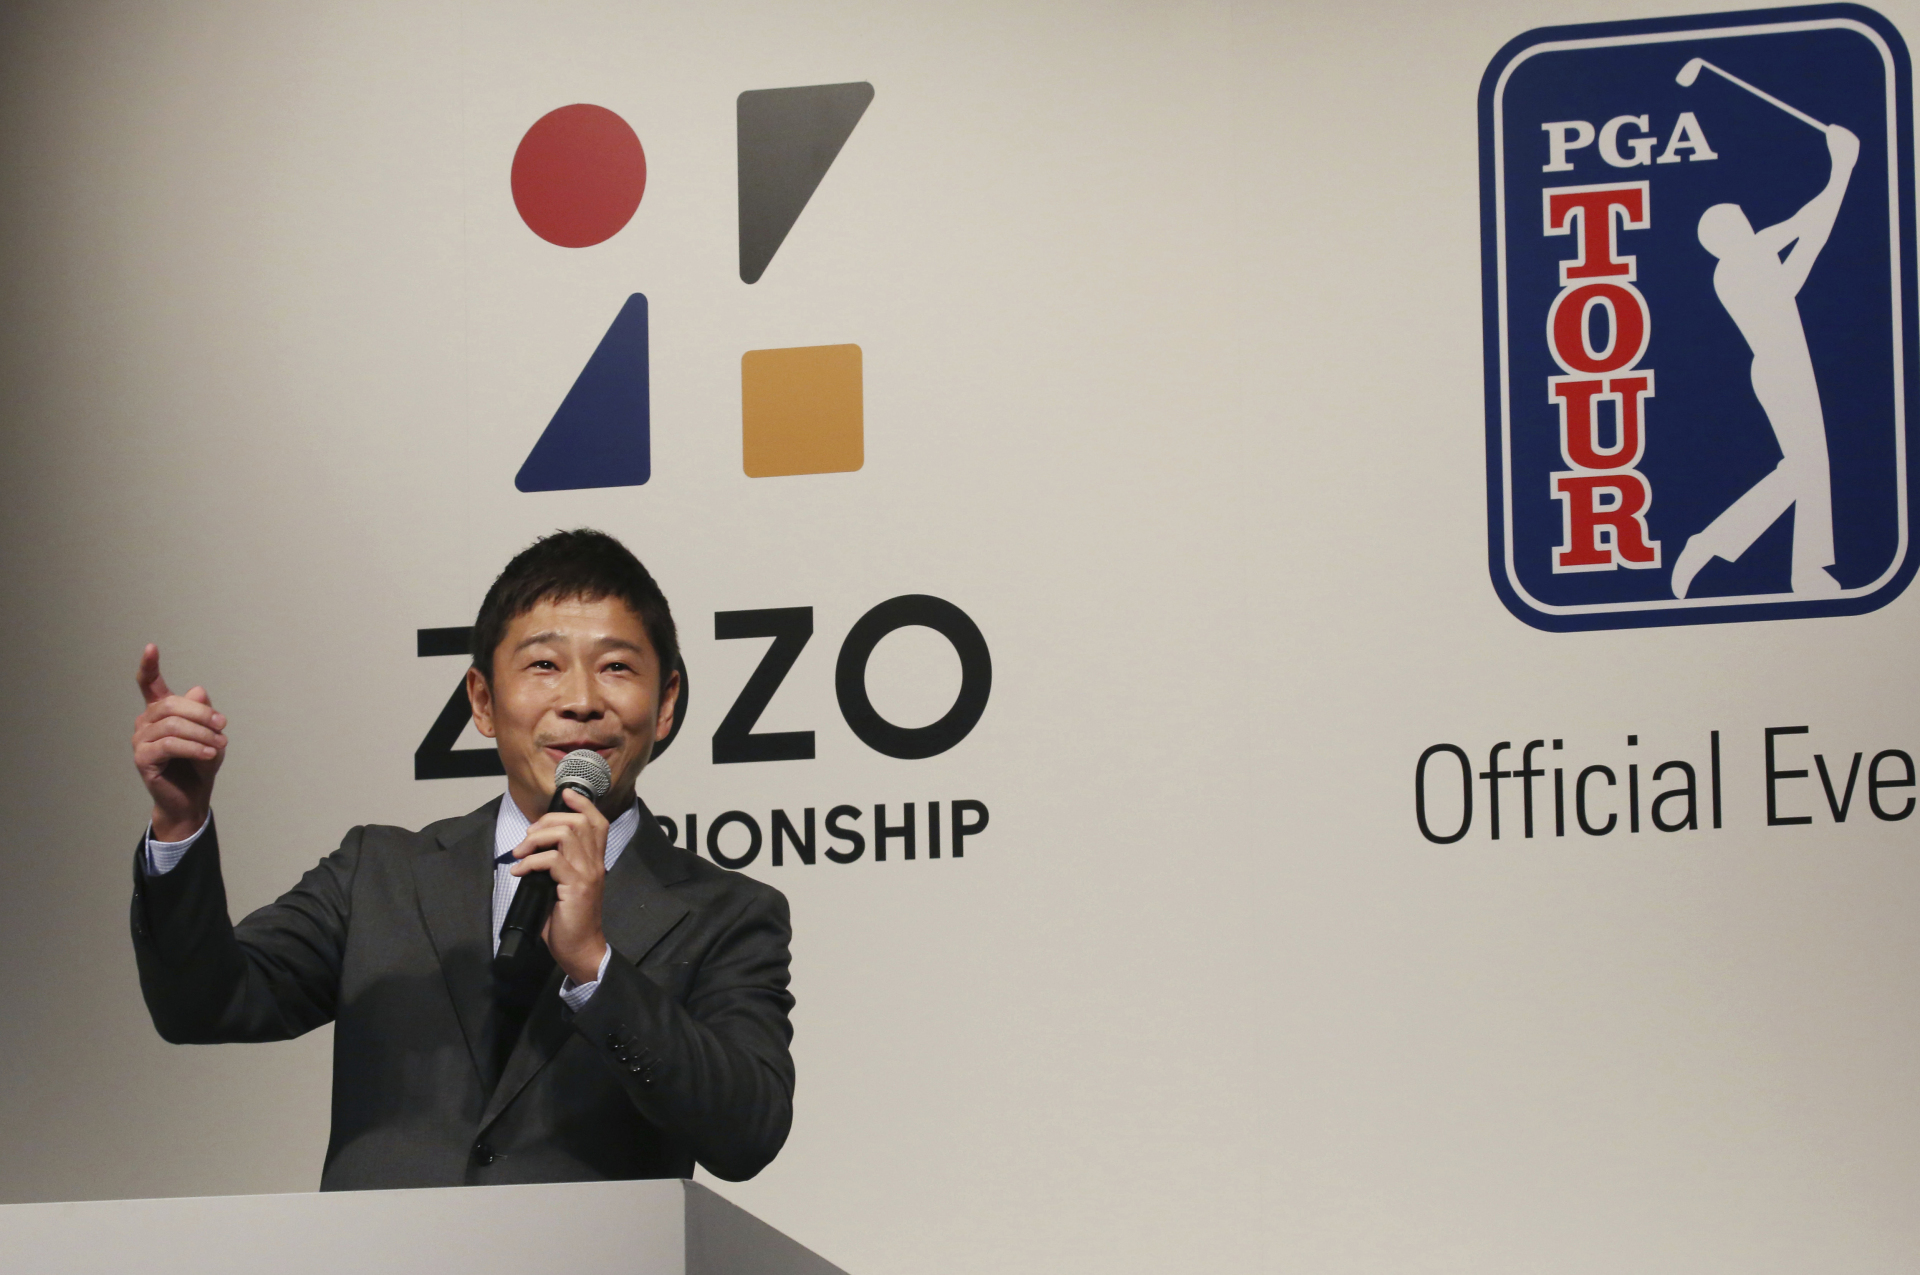 Nhật Bản trở thành điểm đến tiếp theo của PGA Tour từ năm 2019